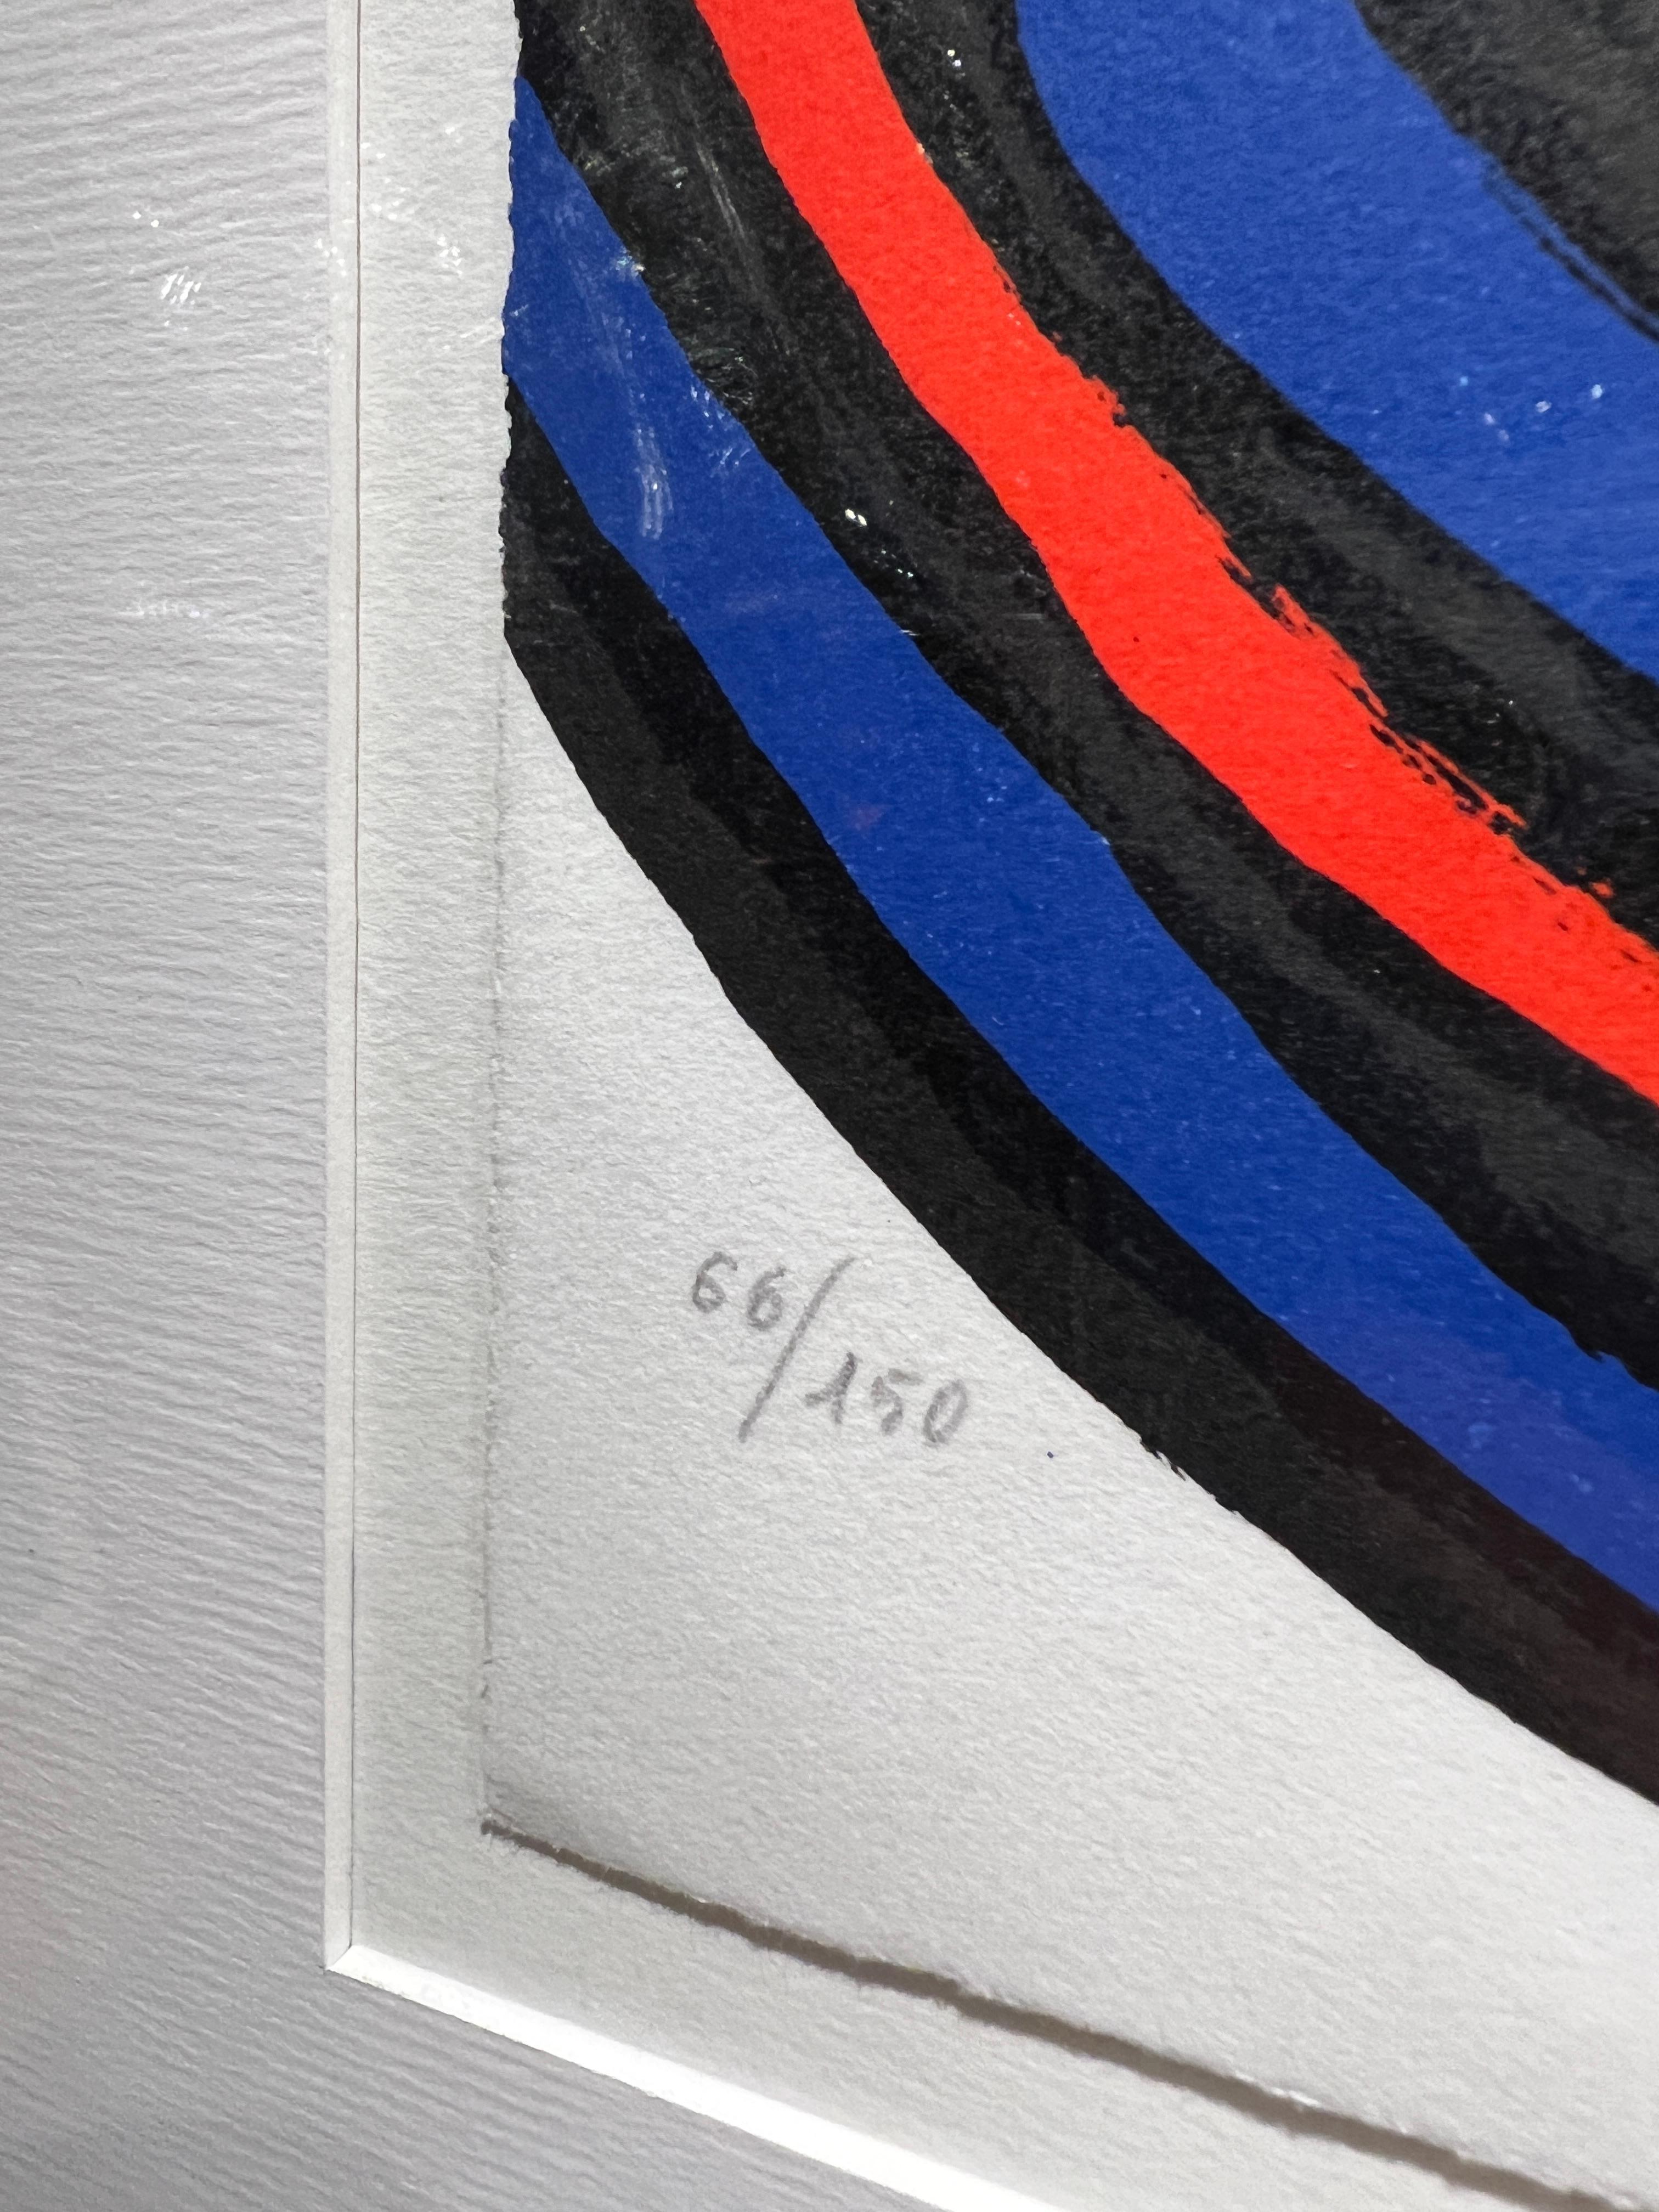 Les triangles et la spirale, 1973
Par. Alexander Calder (Américain, 1898-1976)
Signé en bas à droite
Numéroté : 66/150
Sans cadre : 26 x 19.25 pouces
Encadré : 34 x 27 pouces


Alexander Calder est né à Philadelphie en 1898. Après avoir obtenu son